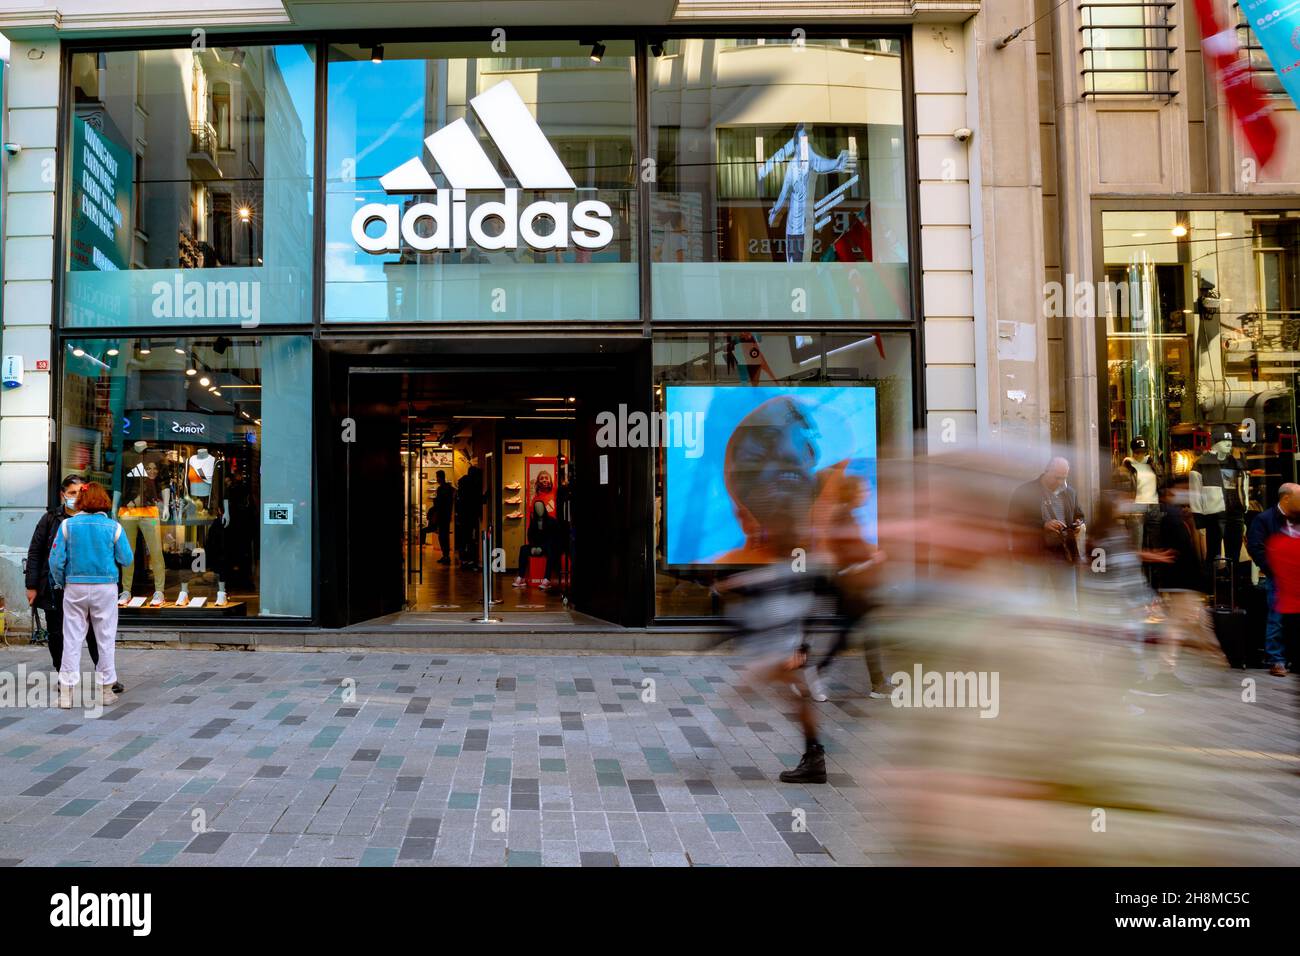 Adidas Store. Adidas Store in Istanbul. Bewegung von Menschen, die zu Fuß gehen. Taksim Istanbul Türkei - 11.13.2021 Stockfoto